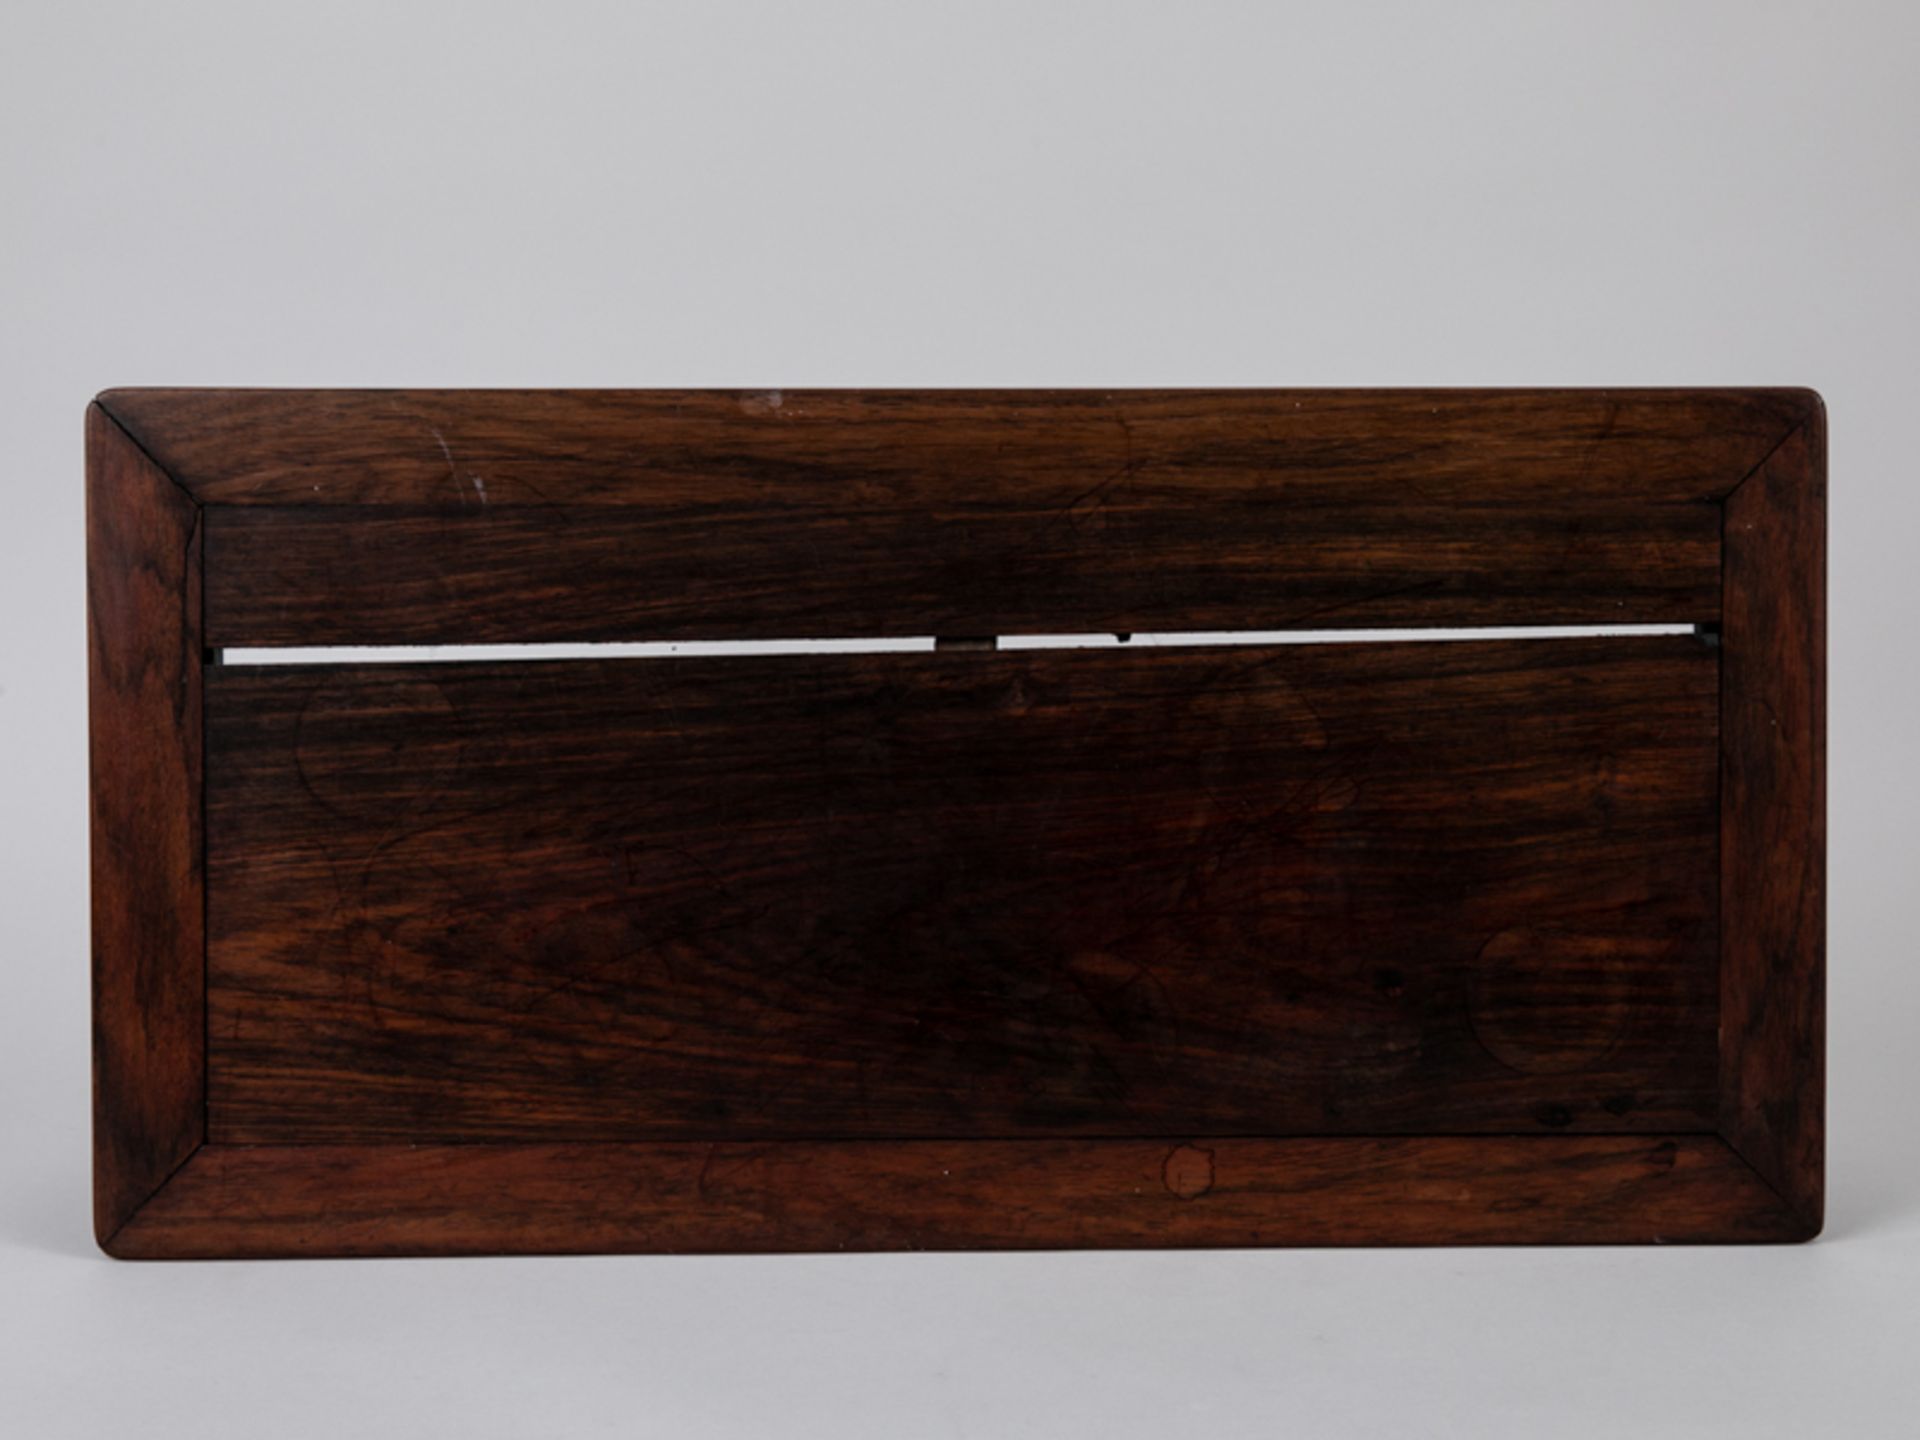 Teetisch, China, 18./19. Jh. Huanghali-Holz; rechteckig auf 4 kurzen Rundstabbeinen, umlaufend - Bild 3 aus 5